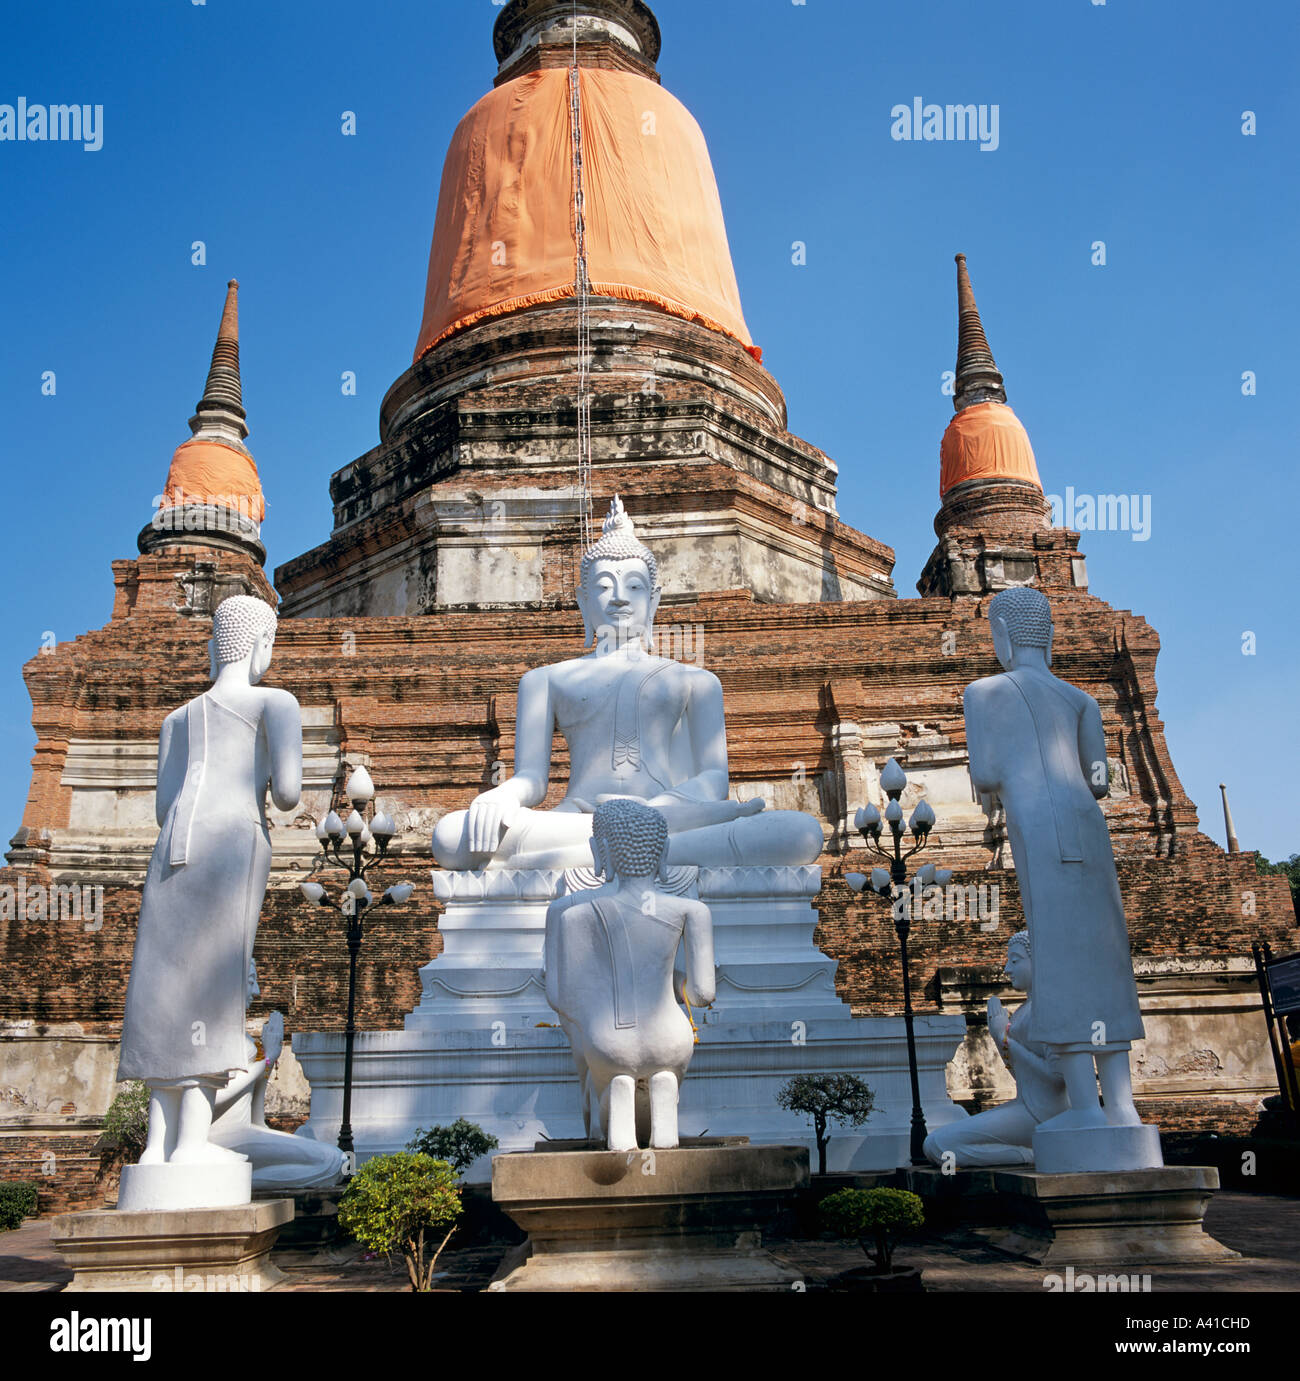 Wat Yai Chai Mongkhon Ayuthaya Thaïlande Asie du sud-est Banque D'Images